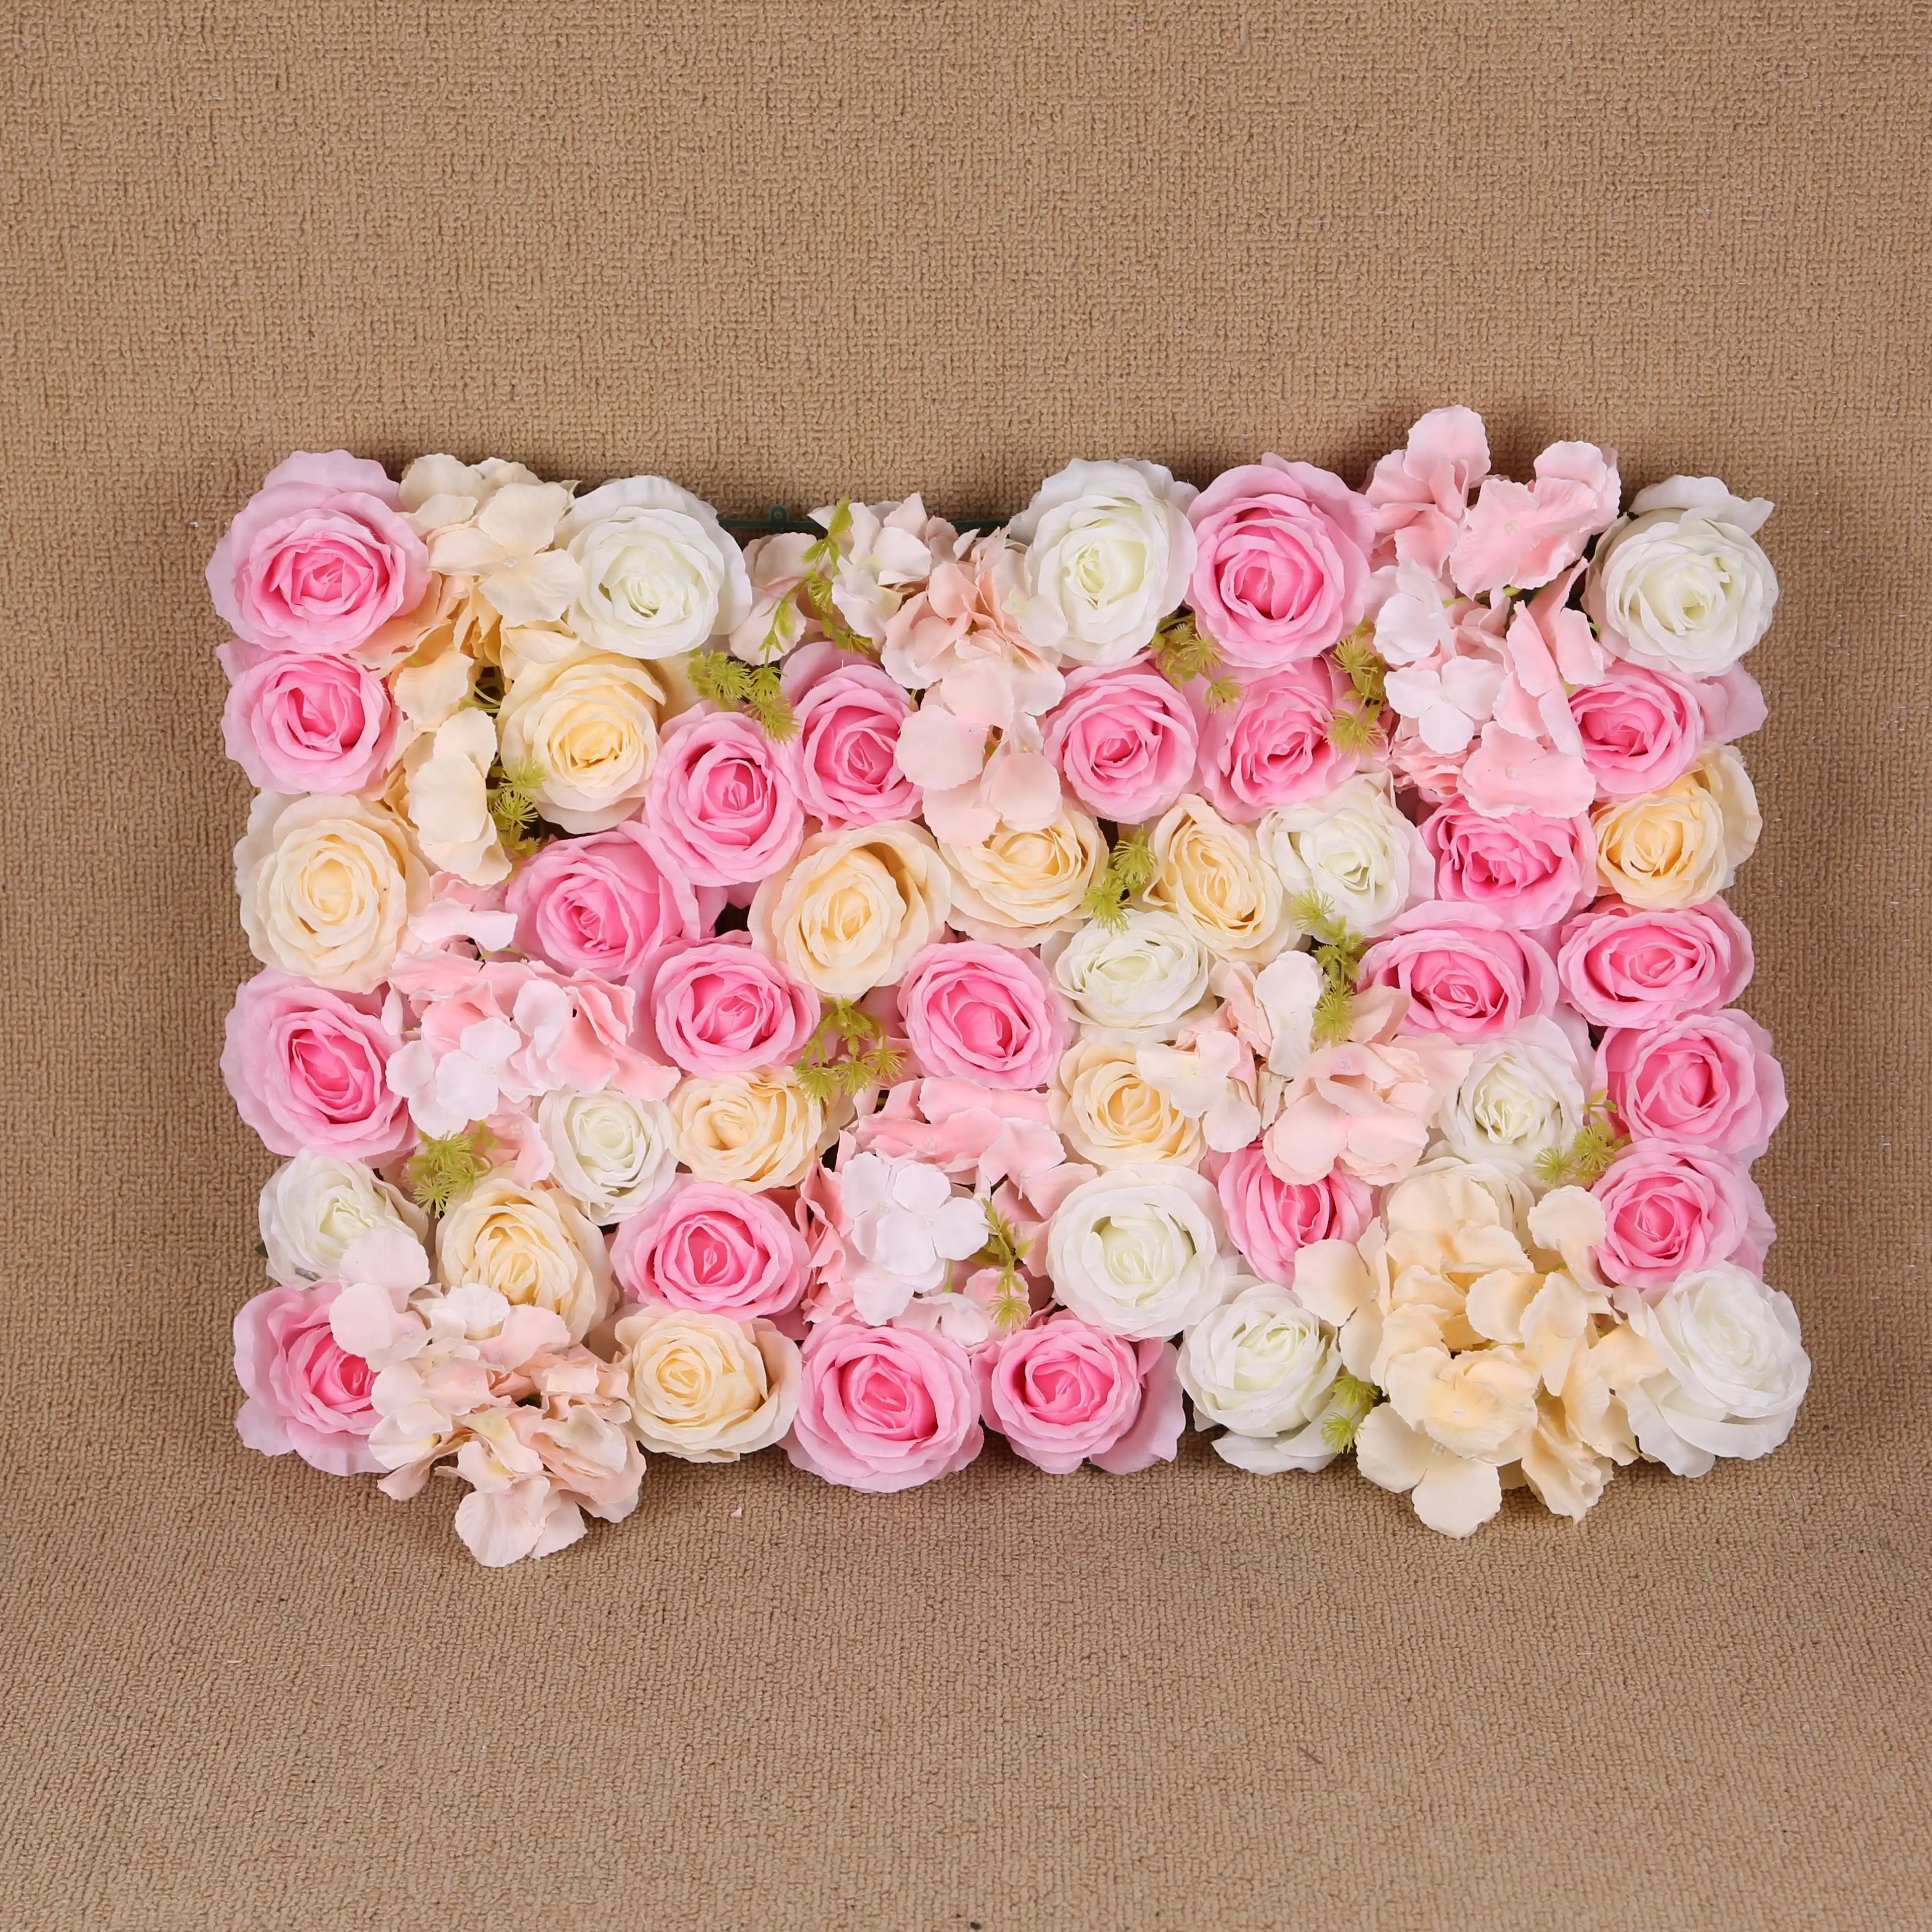 Rosa de parede floral 3d, flores artificiais de hortência para decoração de casamento, de parede 3d de rolo para decoração de festa